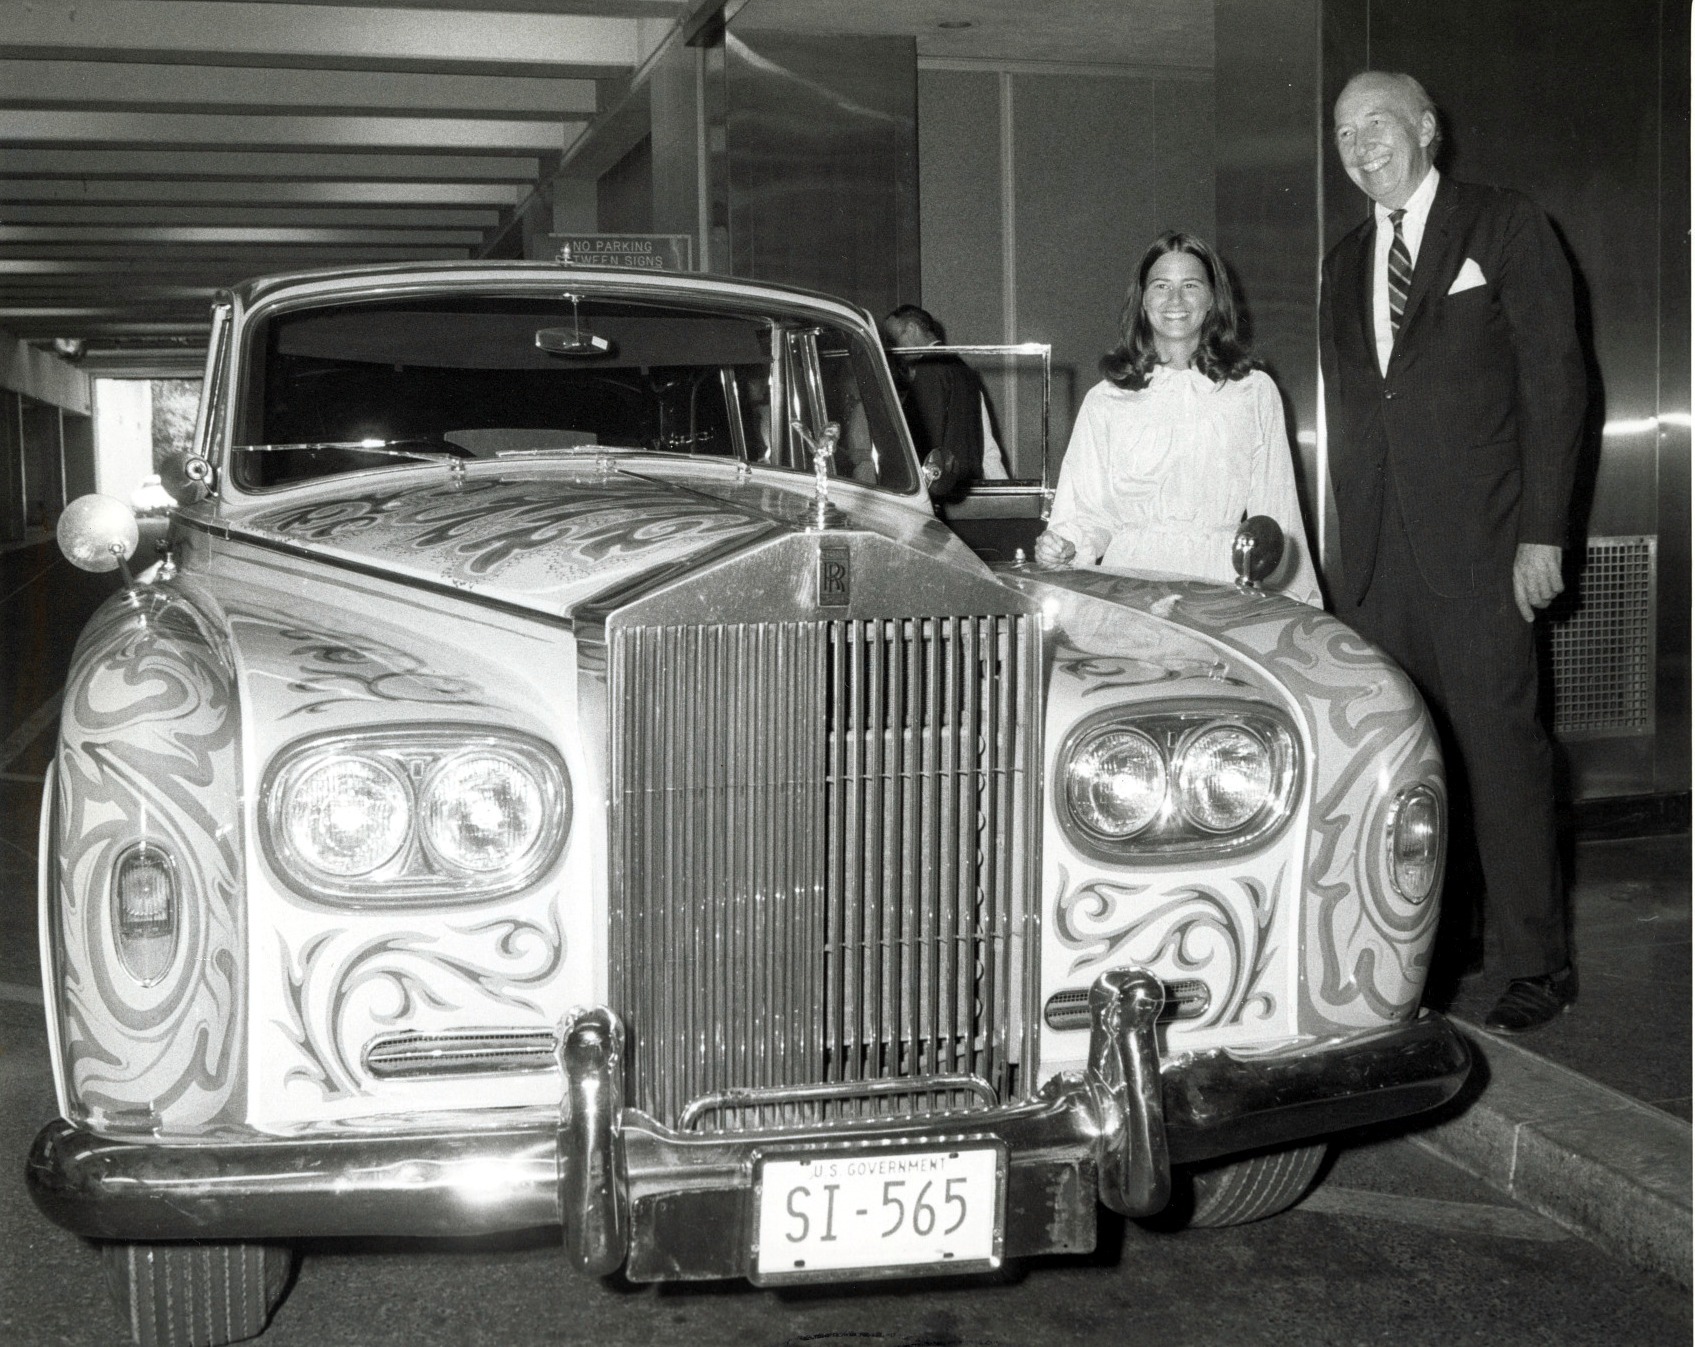 Secretary S. Dillon Ripley shows the Beatles' Rolls-Royce to Caron Carter